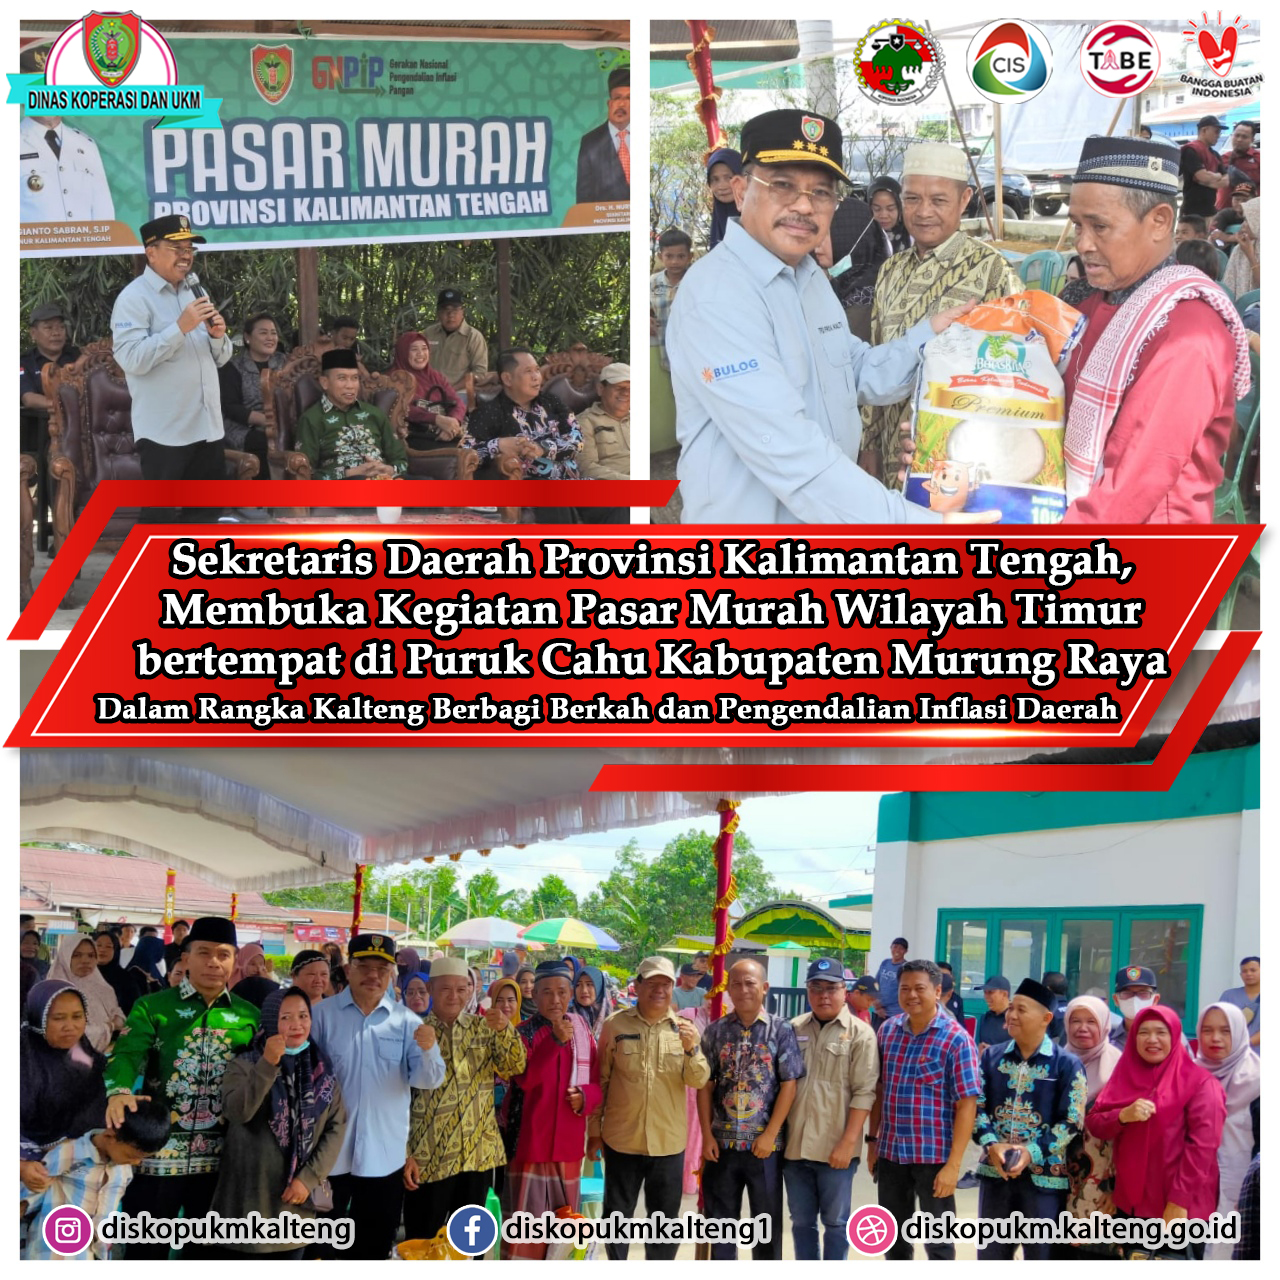 Sekretaris Daerah Prov. Kalteng H. Nuryakin membuka Kegiatan Pasar Murah Wilayah Timur Kabupaten Murung Raya